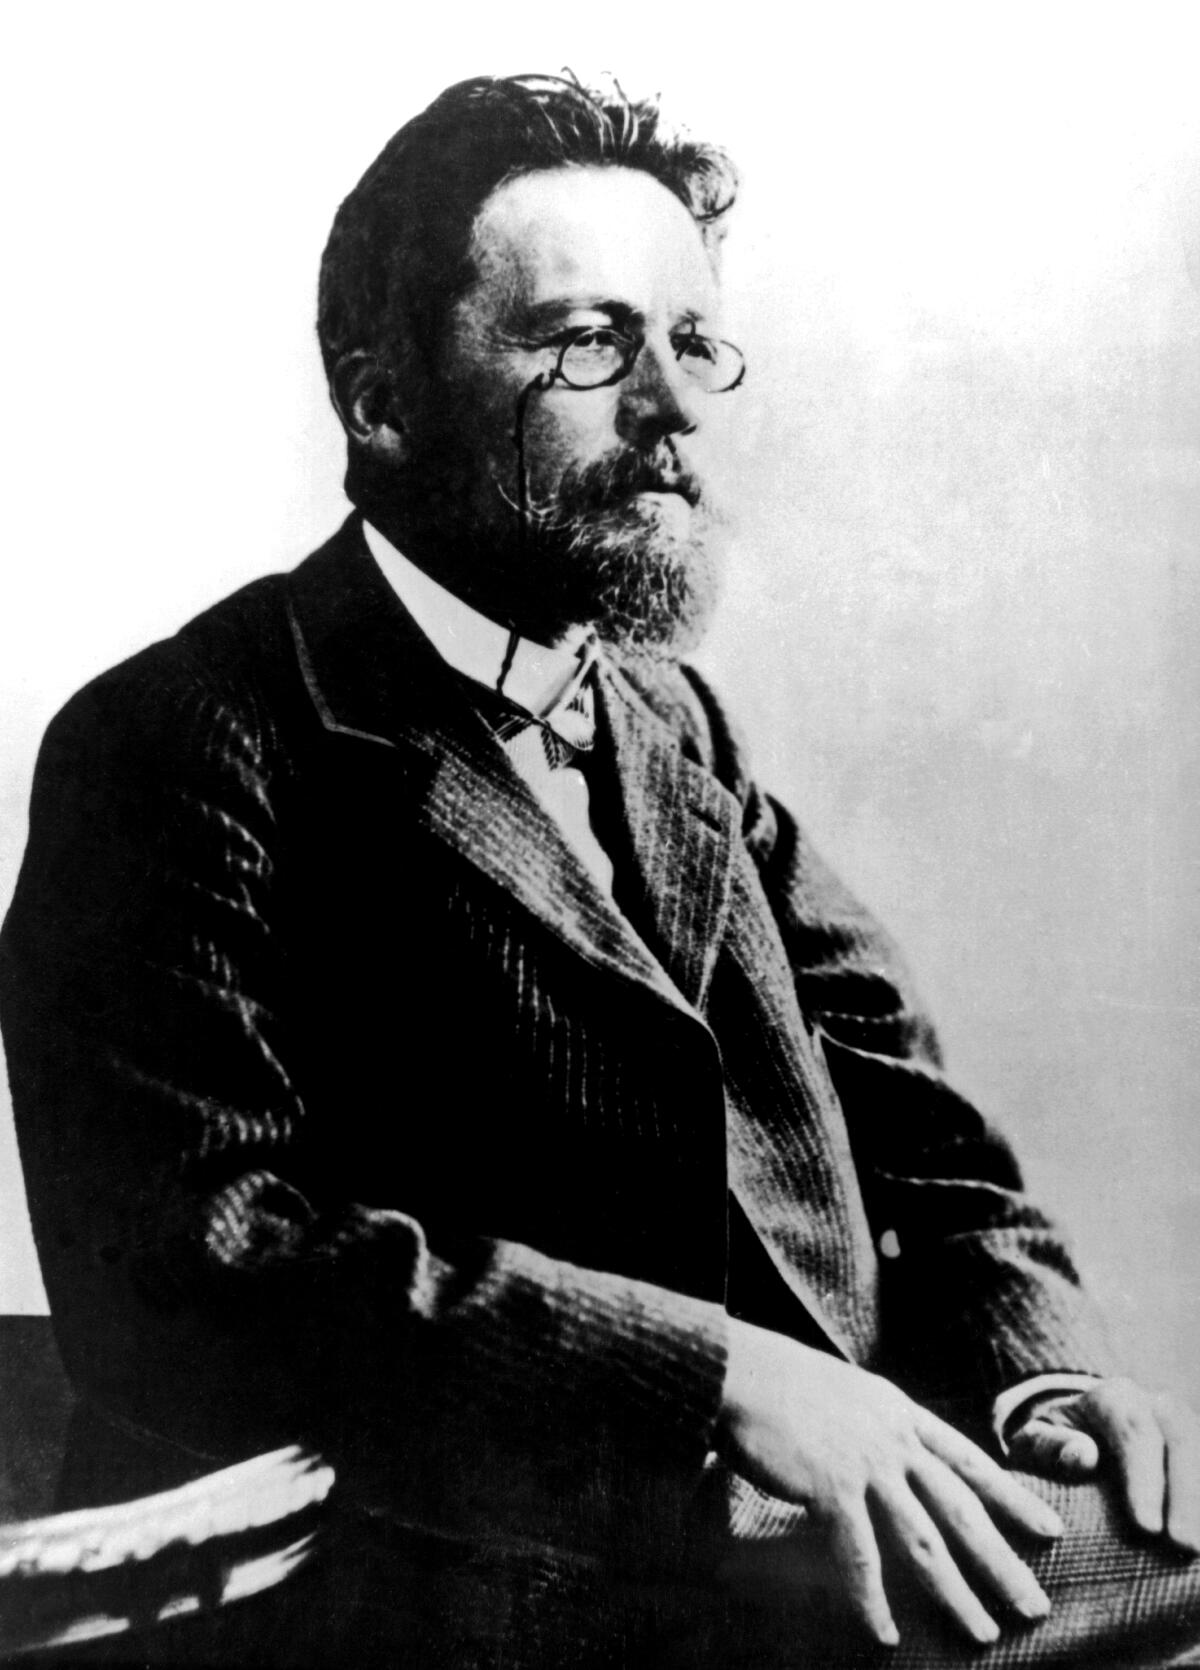 Portrait of the Russian writer Anton Chekov circa 1890-1904.